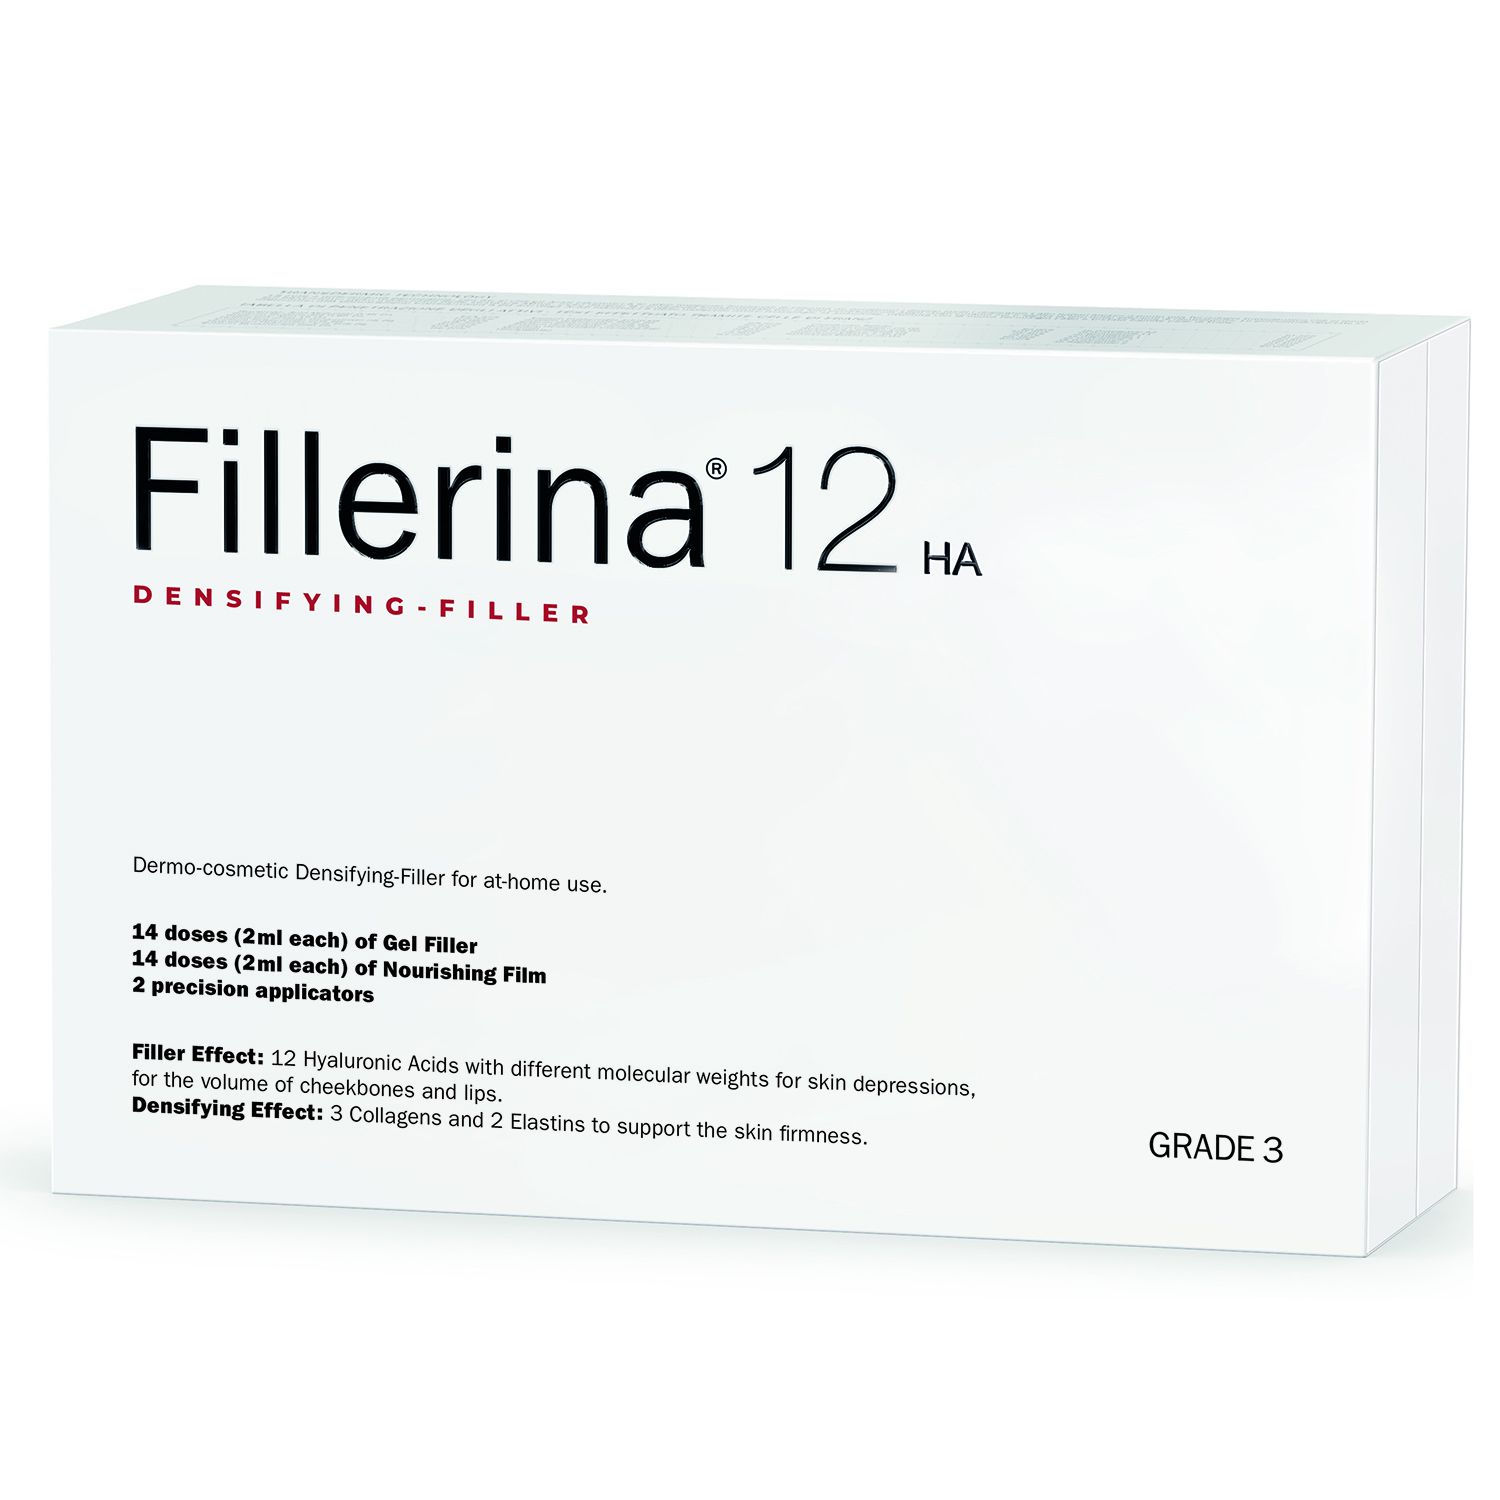 Набор дермо-косметический Fillerina 12HA Уровень 3 30+30 мл fillerina 12ha densifying filler набор с укрепляющим эффектом уровень 4 60